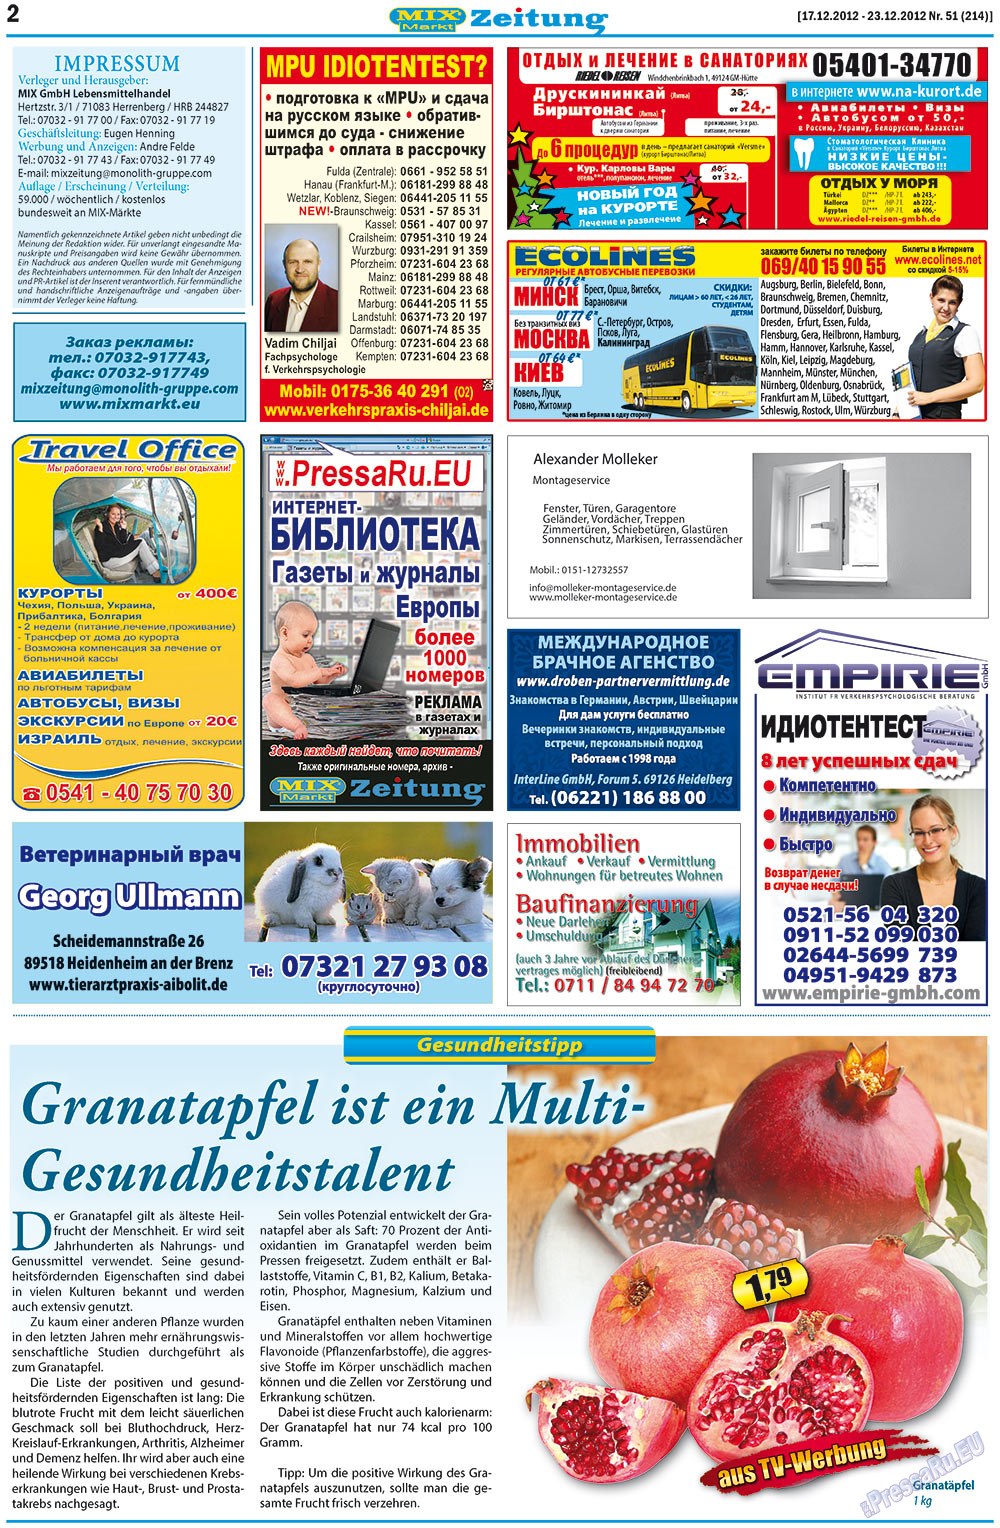 MIX-Markt Zeitung, газета. 2012 №51 стр.2